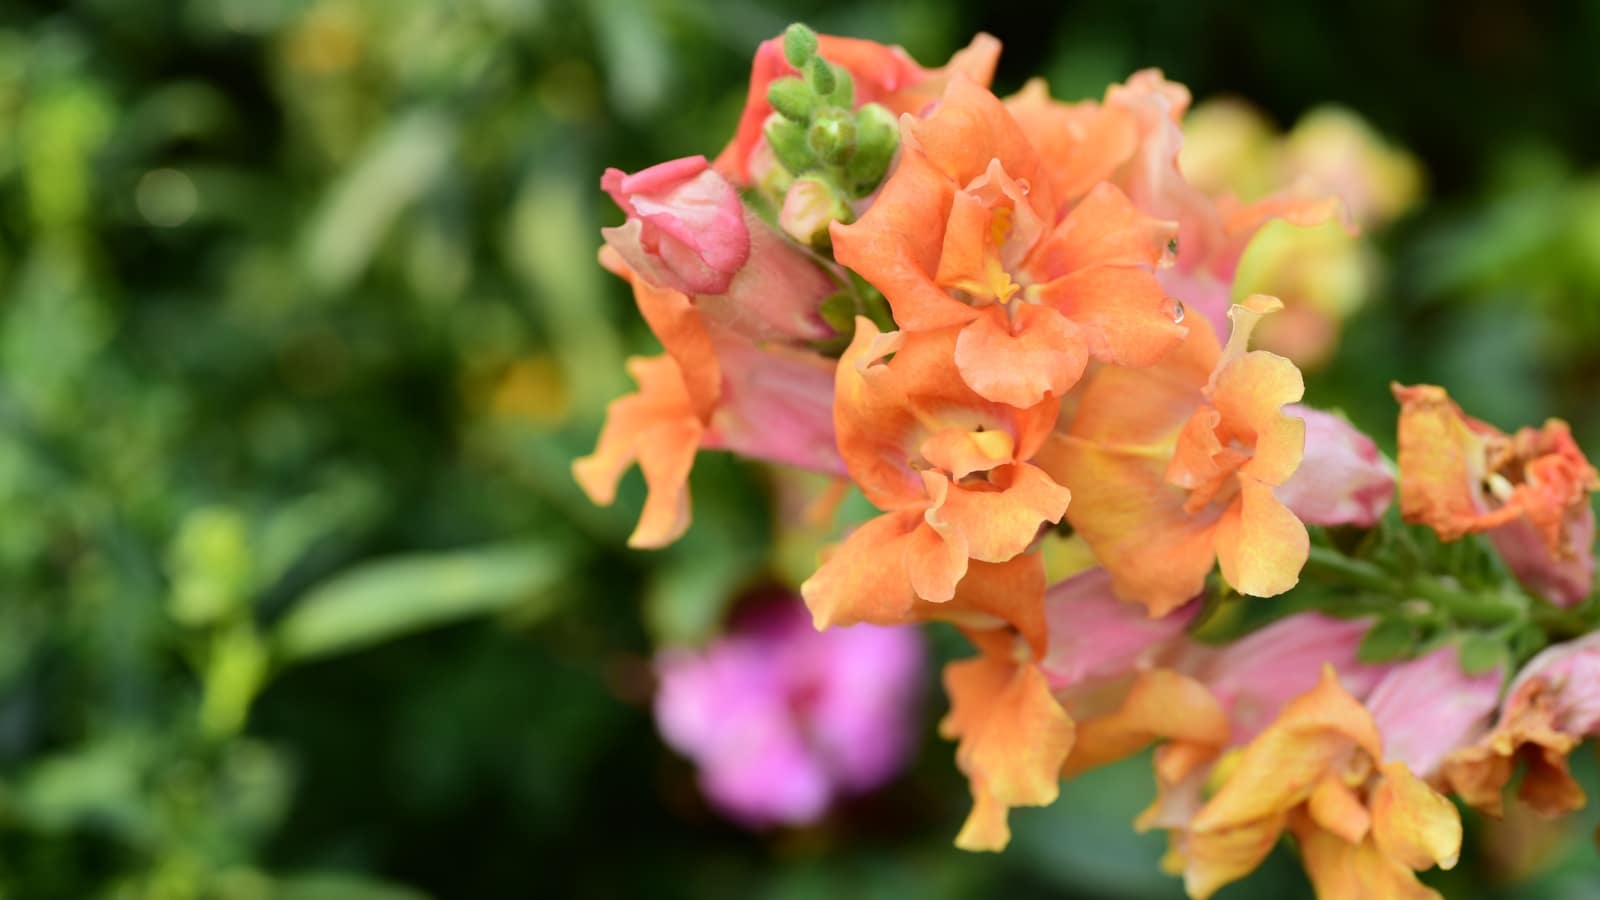 Un primer plano de Snapdragon con vistosas flores tubulares de color naranja.  El racimo de flores está unido al tallo erguido y resistente.  Hay otras plantas verdes en el fondo borroso.